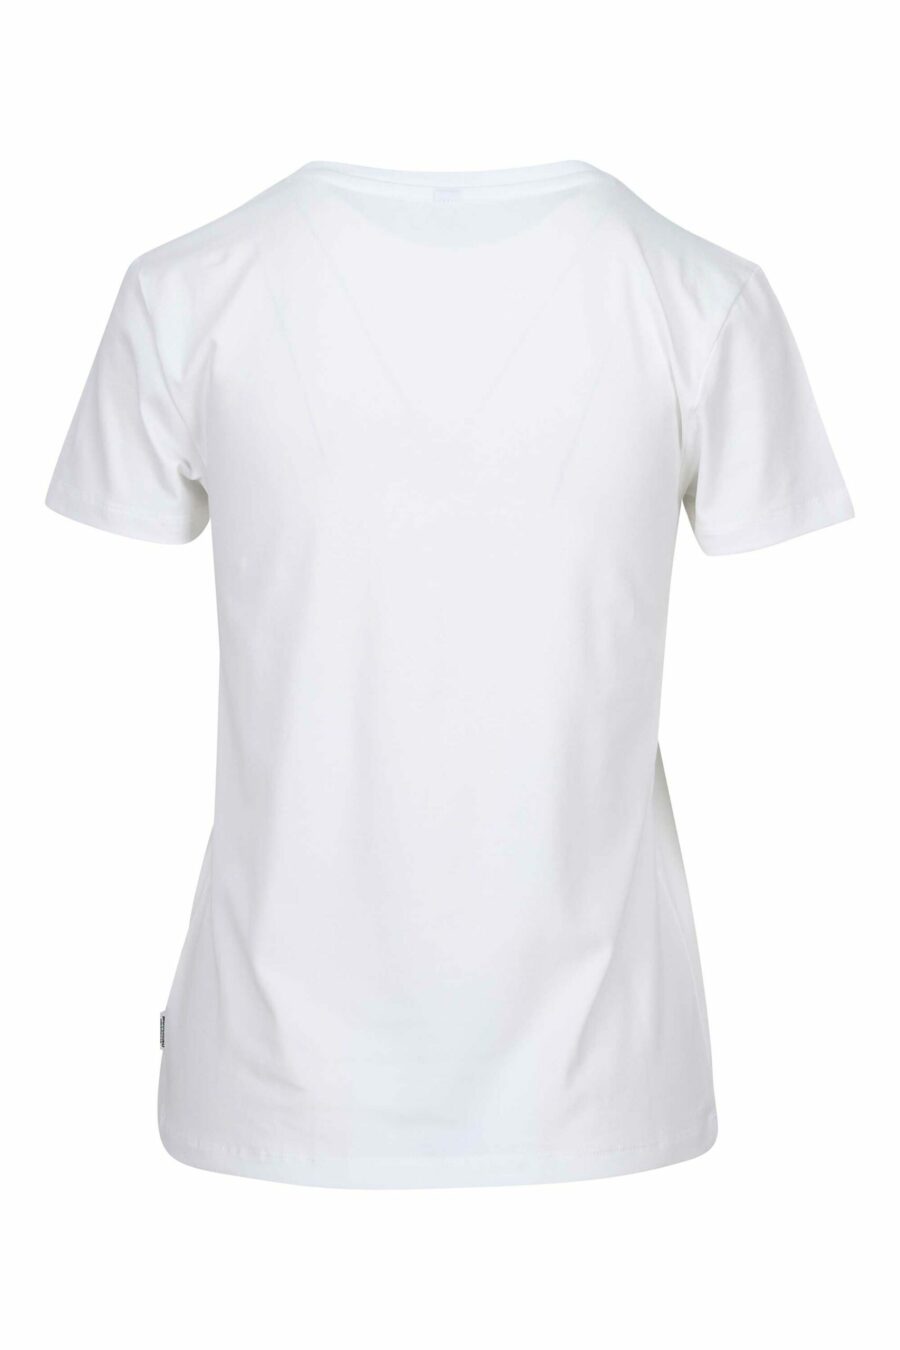 Weißes T-Shirt mit Bärenlogo-Aufnäher "underbear" - 889316618488 1 skaliert